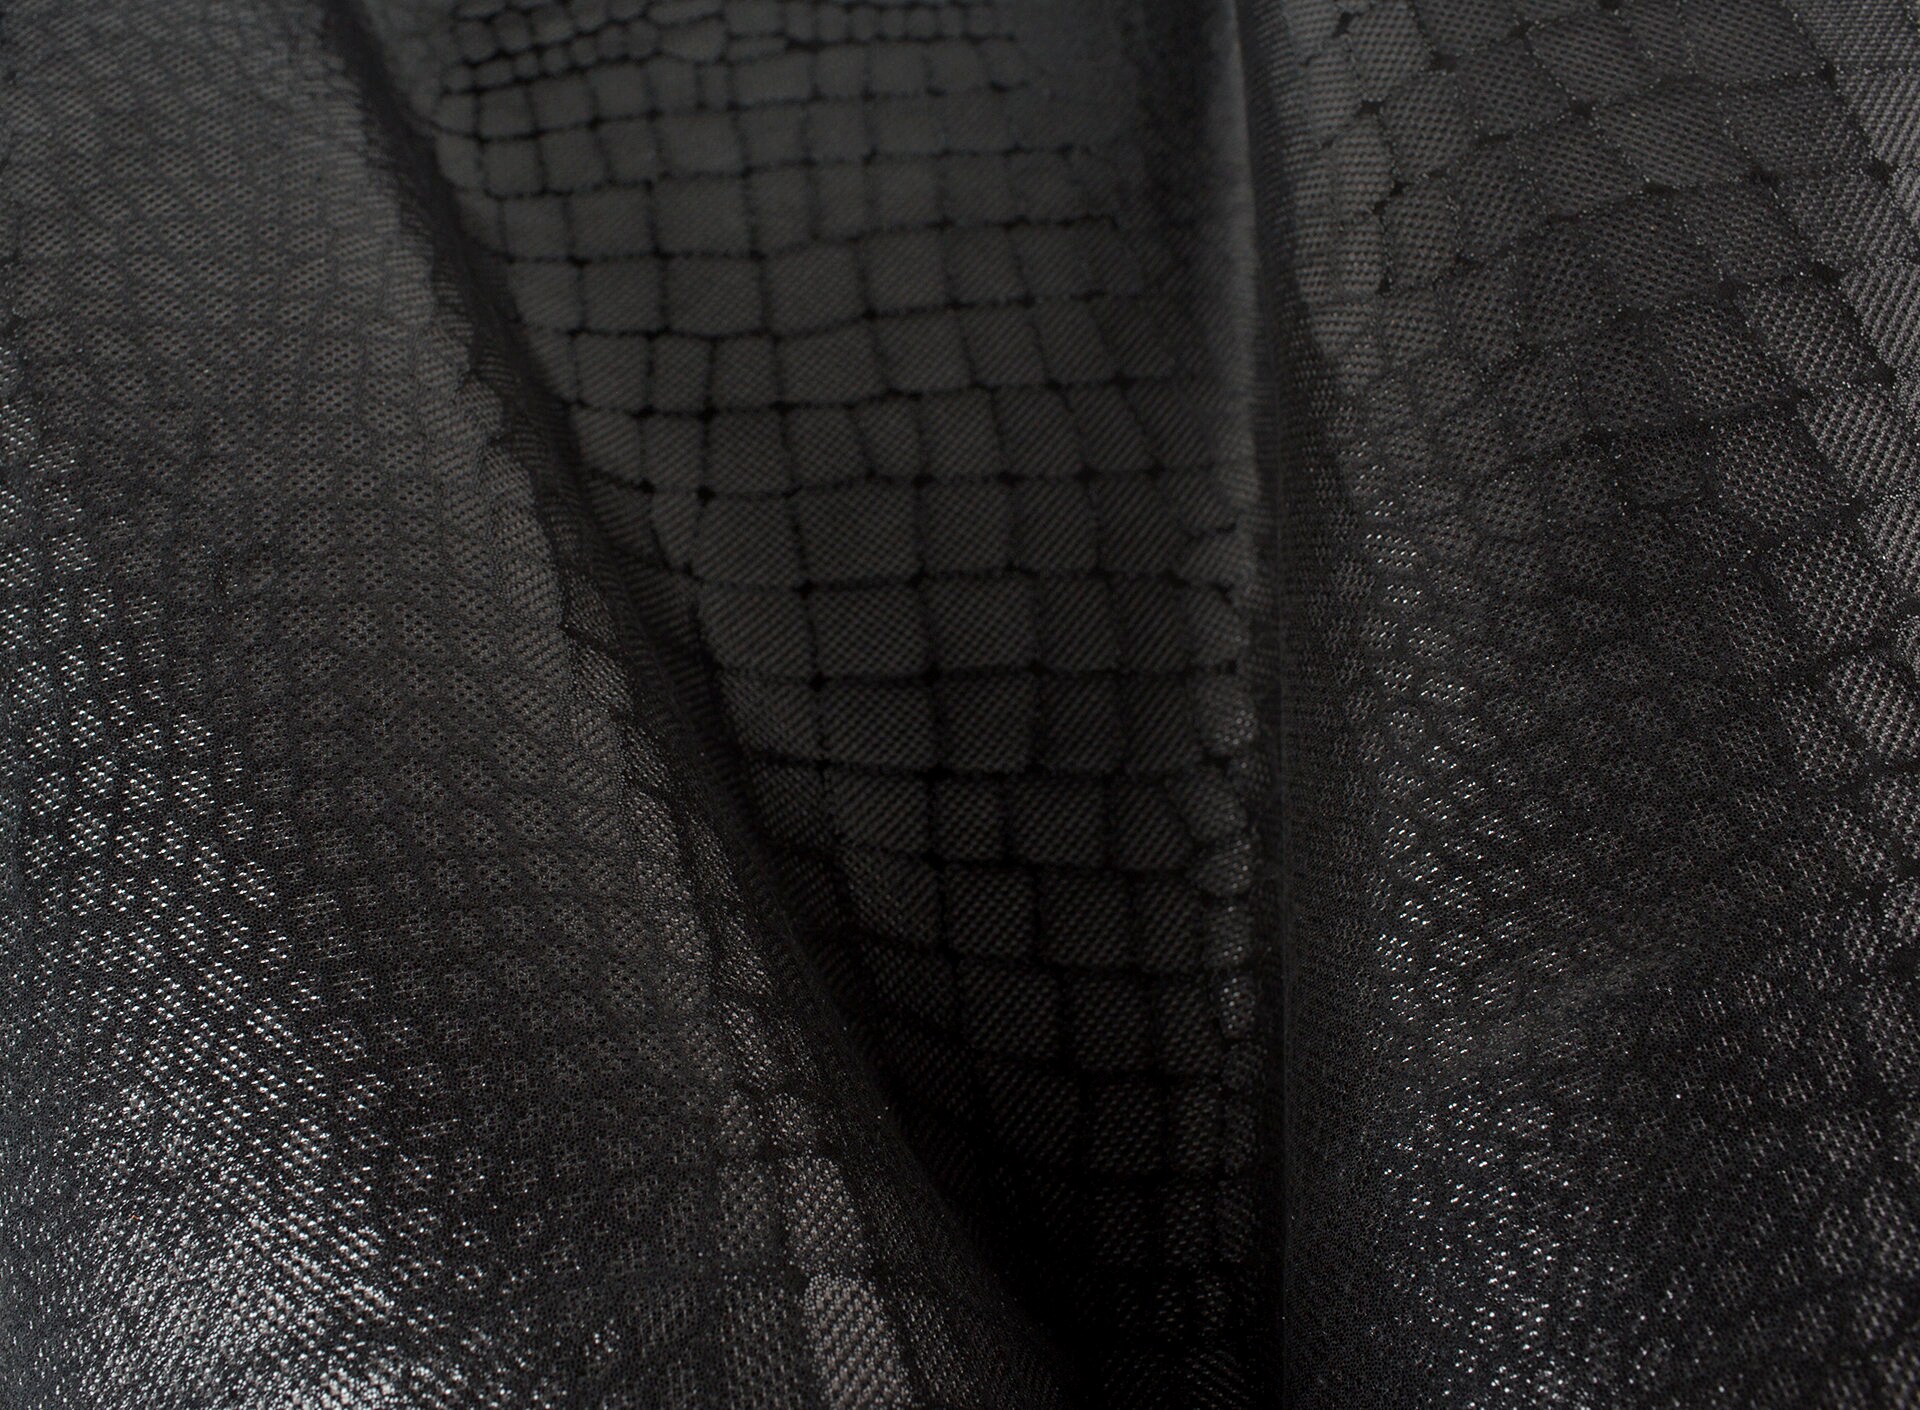 Black Crocodile Embossed Print Nubuk With Sparkles ITALIAN | Etsy